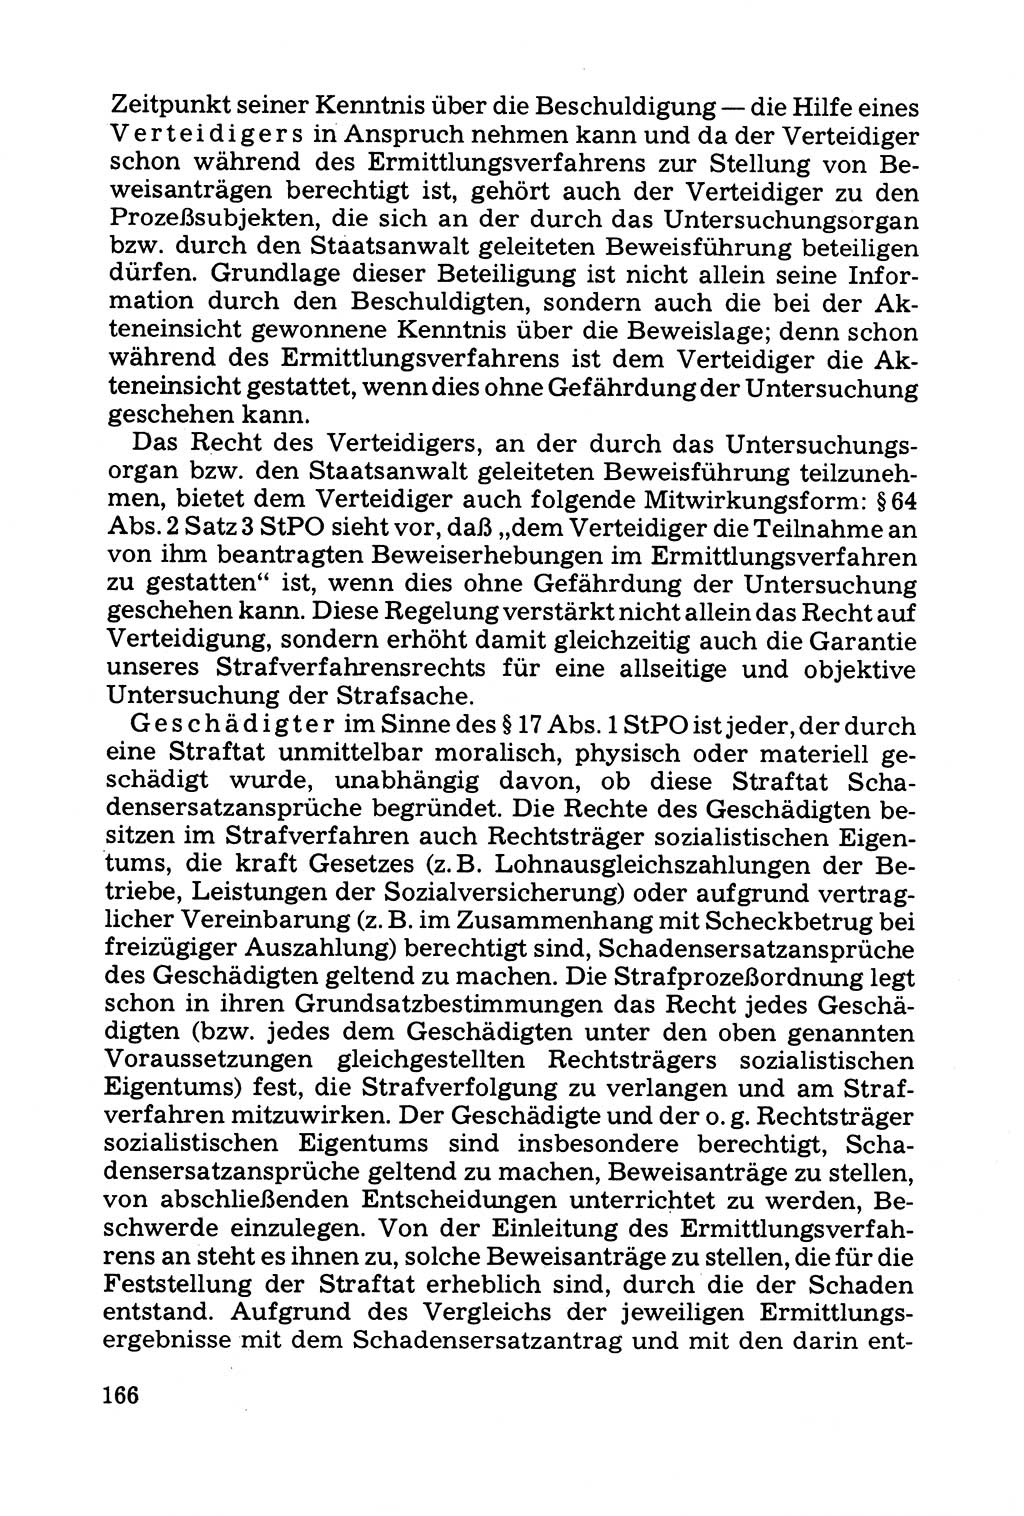 Grundfragen der Beweisführung im Ermittlungsverfahren [Deutsche Demokratische Republik (DDR)] 1980, Seite 166 (Bws.-Fhrg. EV DDR 1980, S. 166)